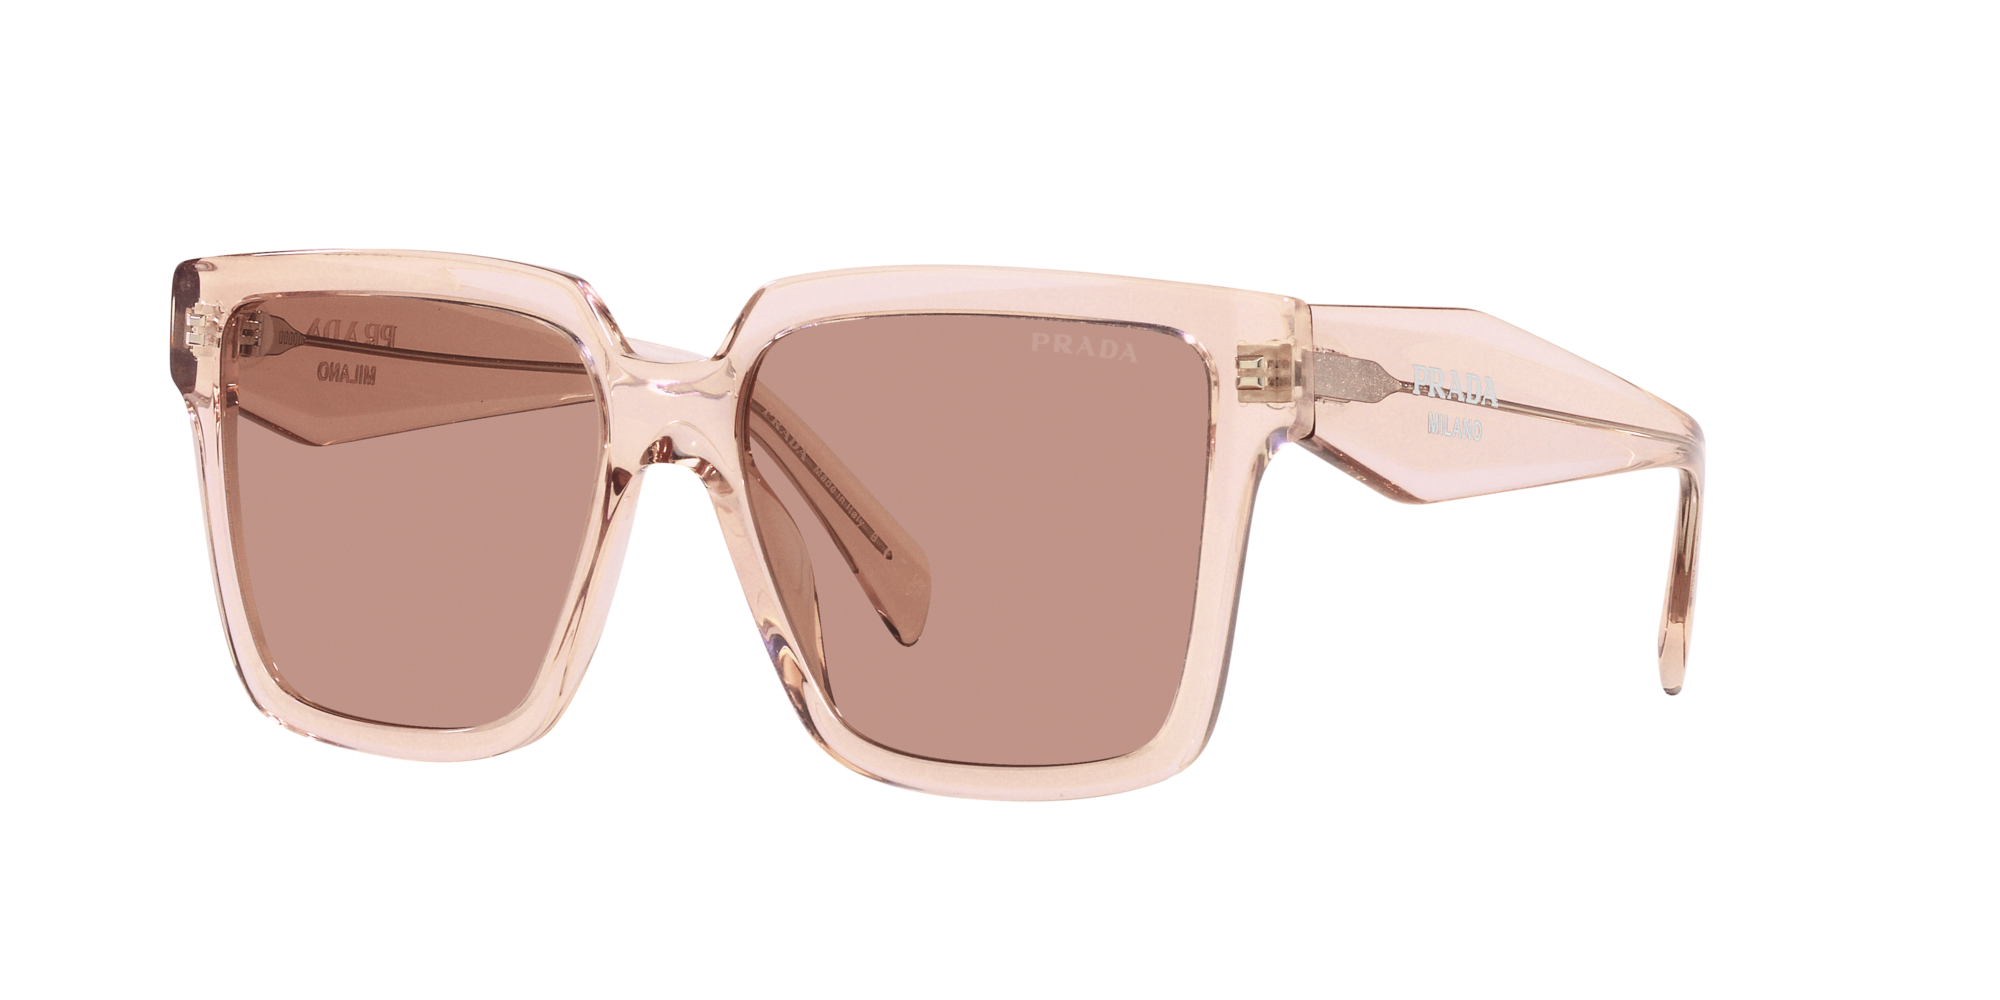 Prada Sonnenbrille für Damen in Rosa transparent PR 24ZS 13I08M 56